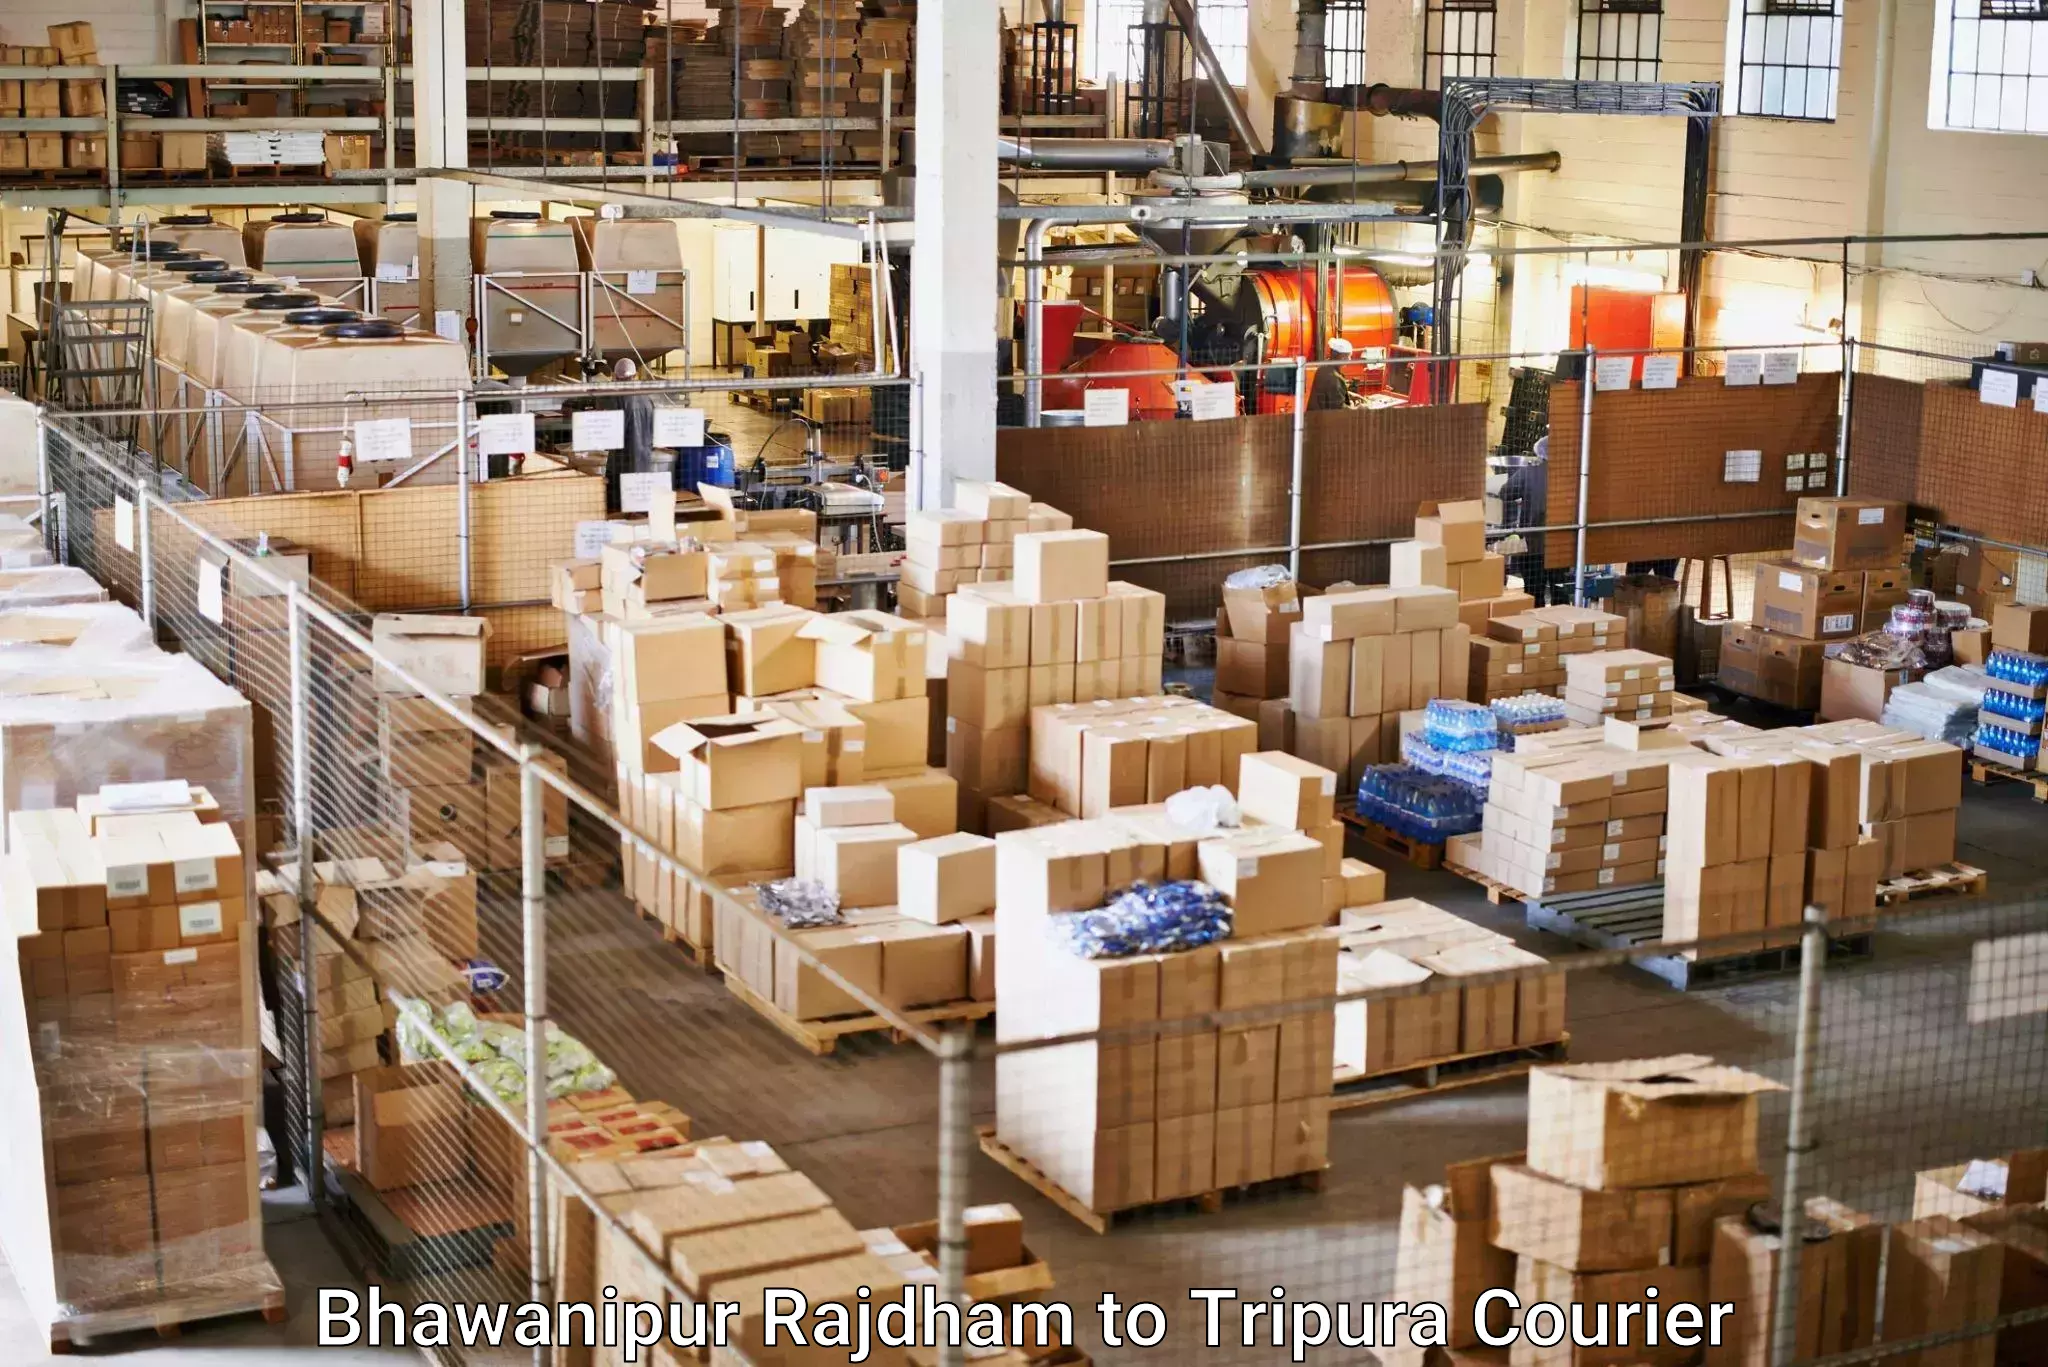 Digital shipping tools Bhawanipur Rajdham to Tripura